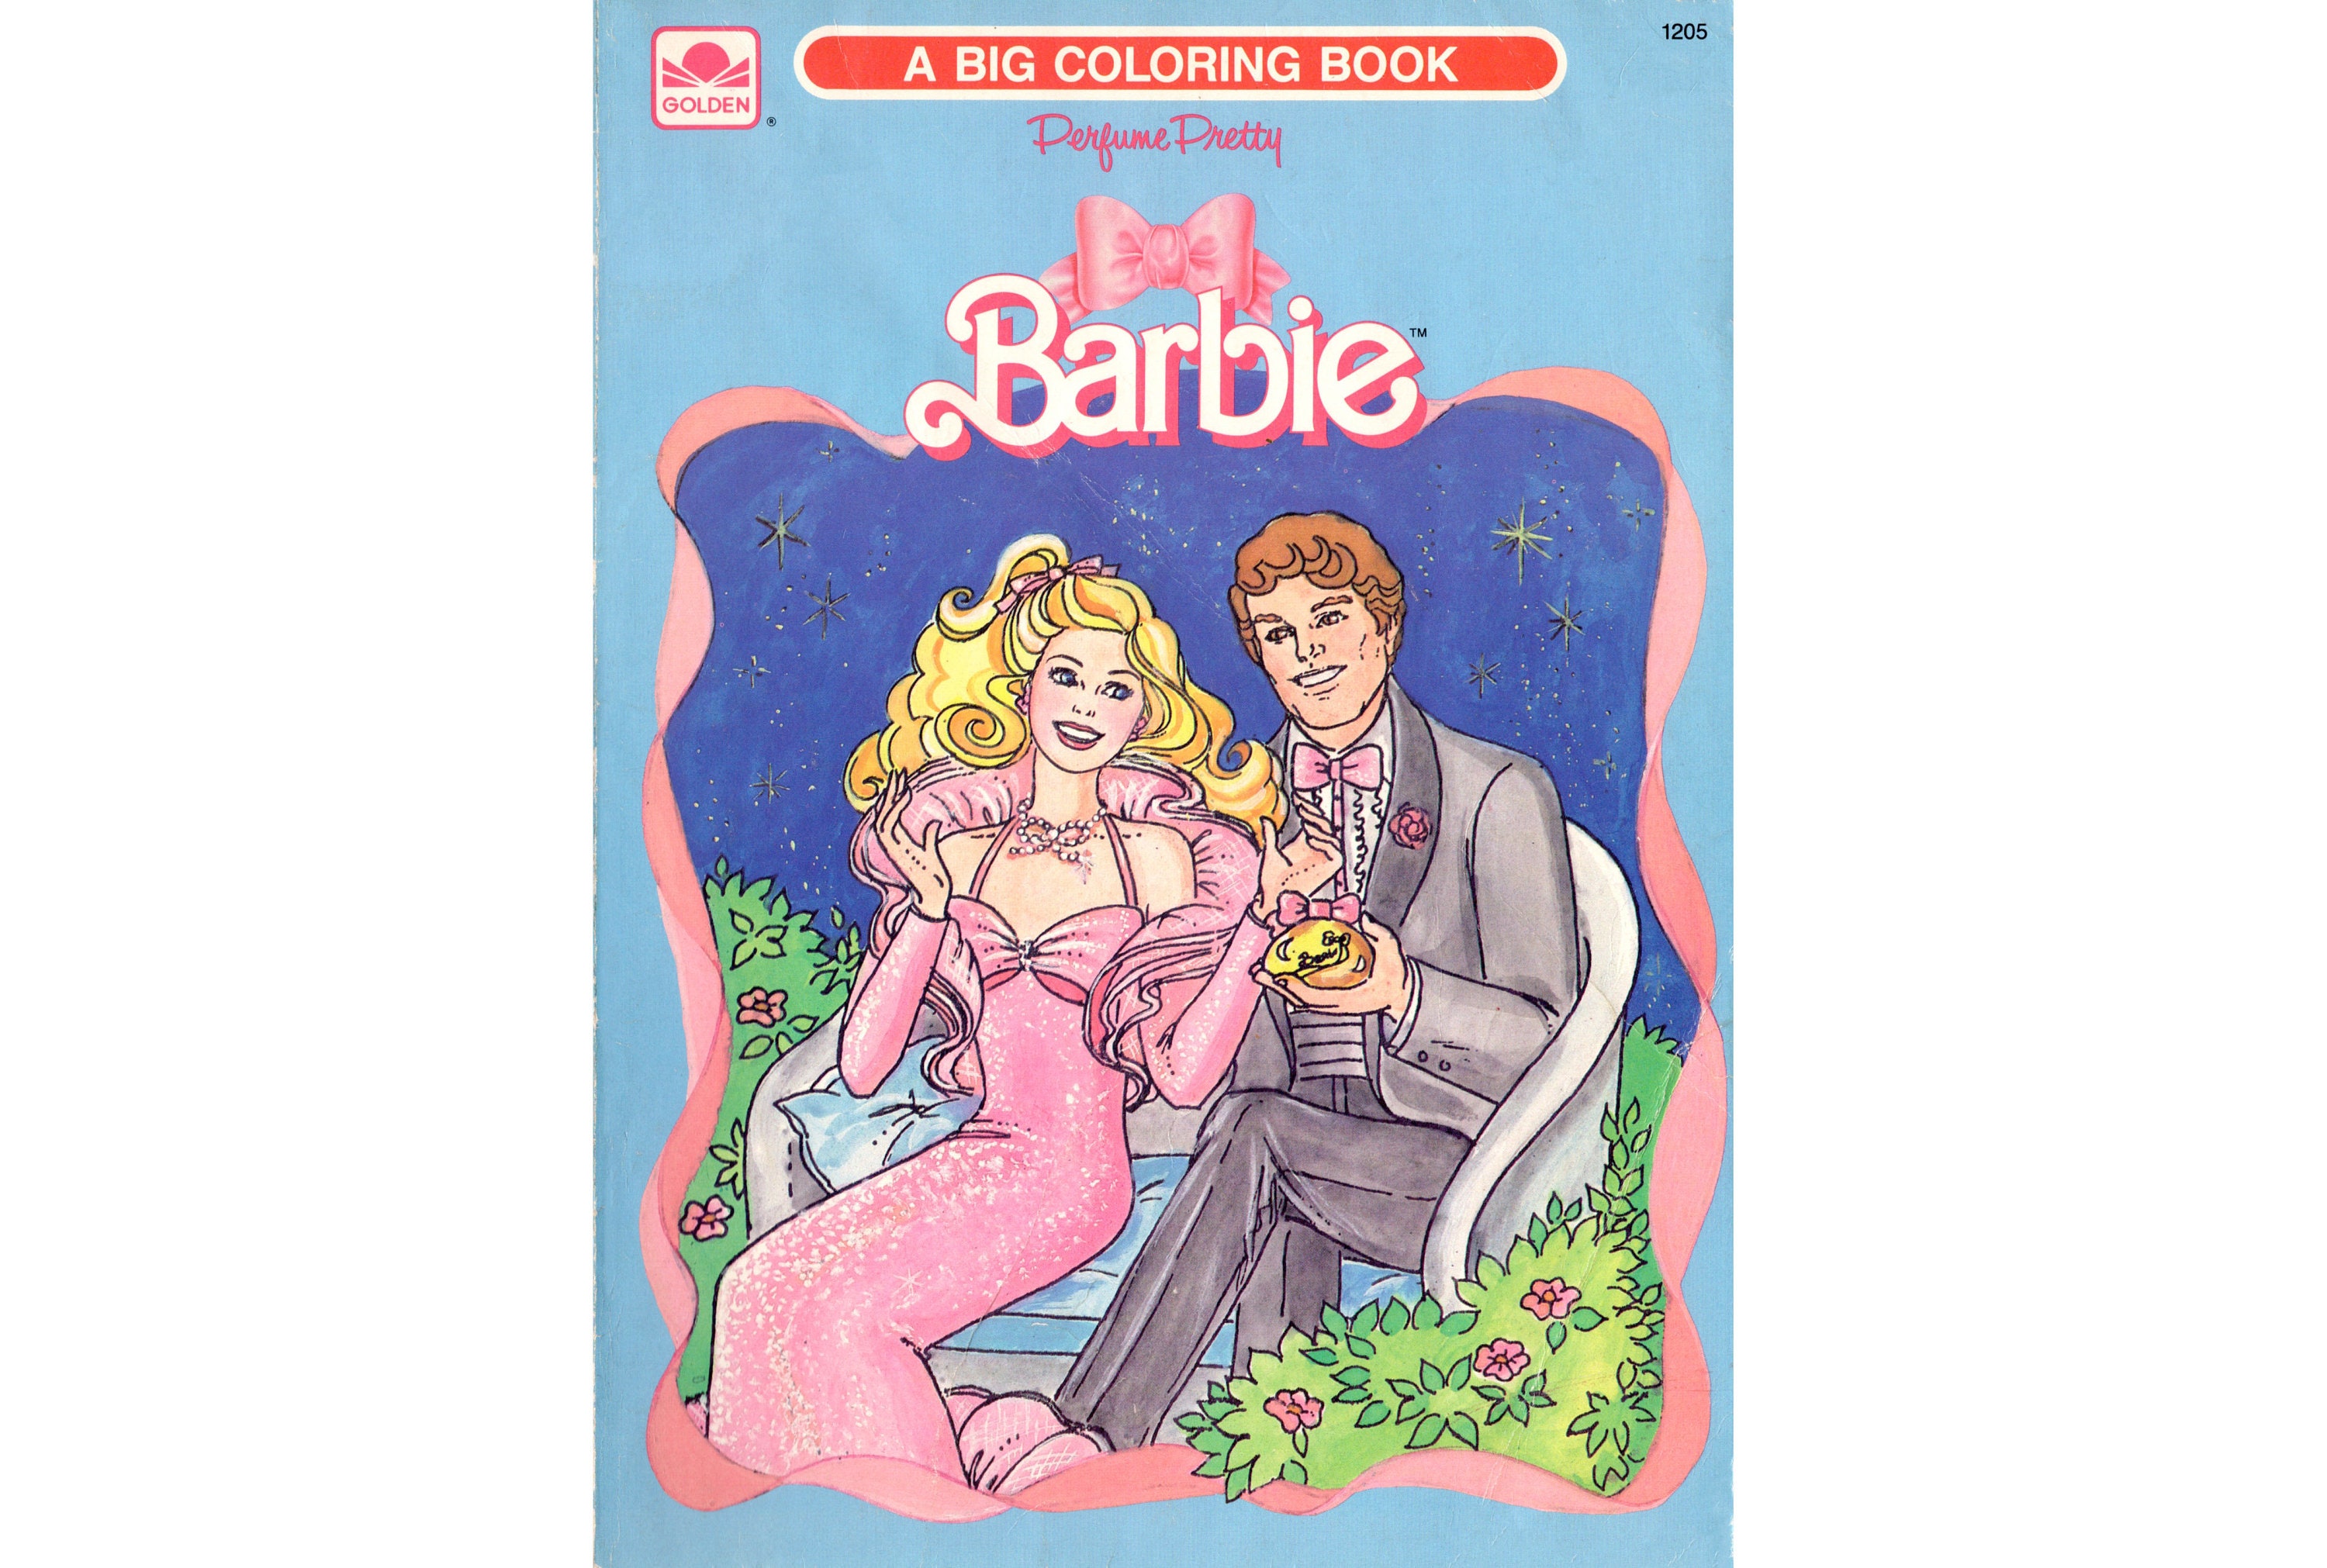 BARBIE COLORING BOOKS One Vintage Golden & Princess Popstar Based